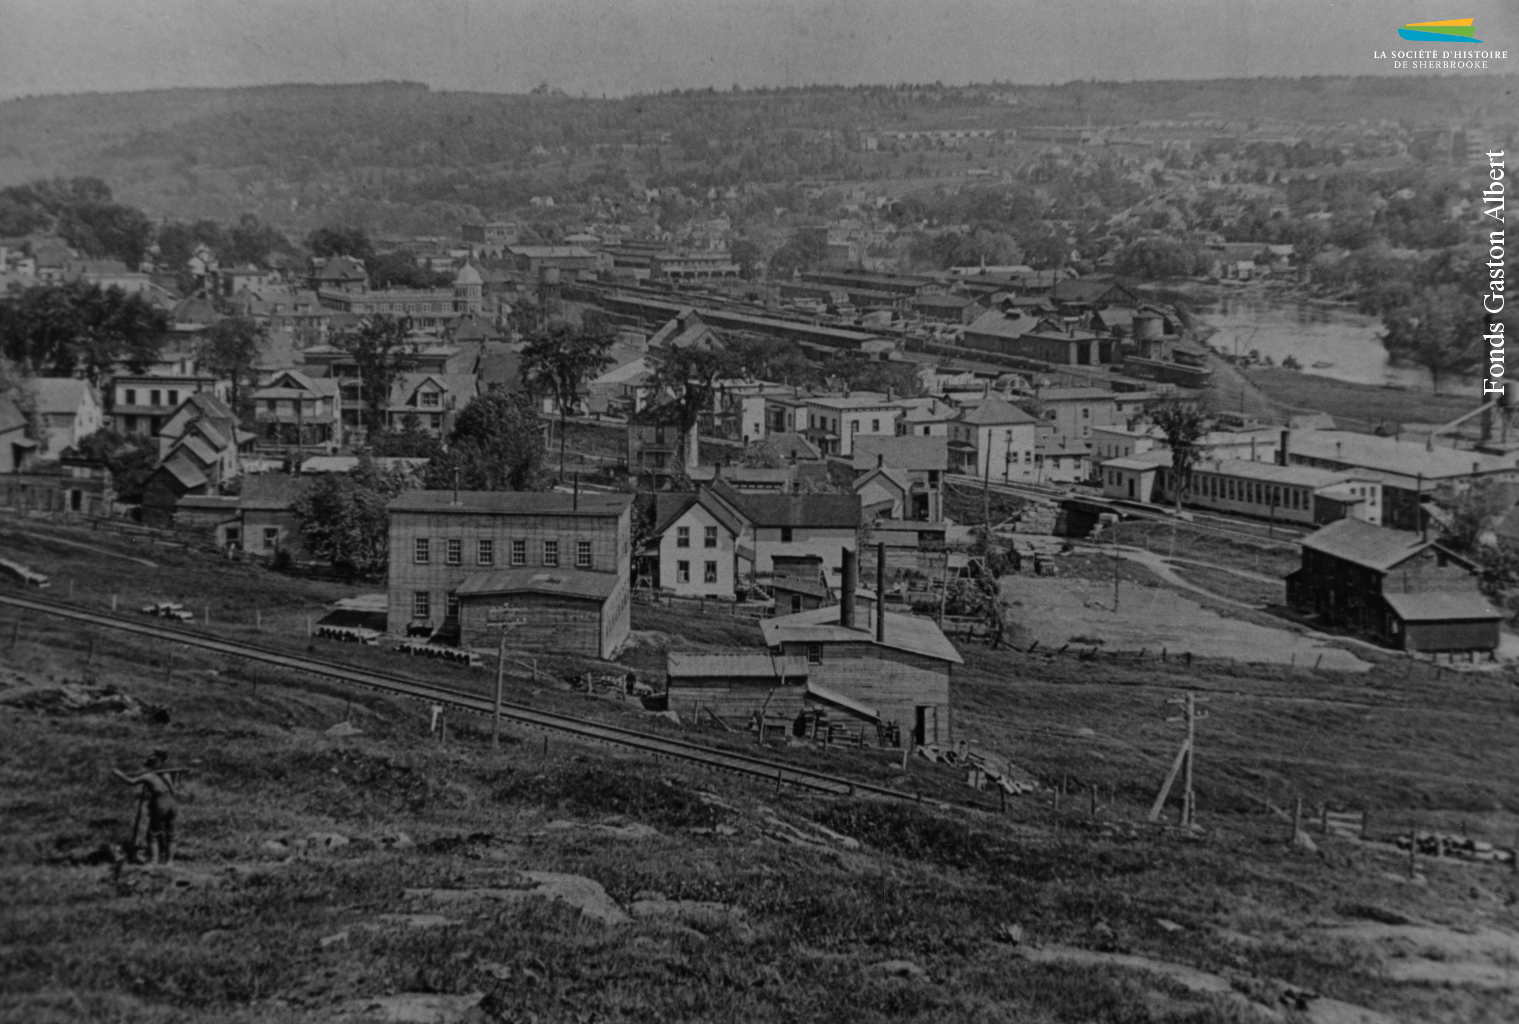 Le quartier Sud de Sherbrooke, vu depuis l’église Immaculée-Conception, vers 1920. Plusieurs rues du quartier sont habitées par des ouvriers, qui y louent des logements.